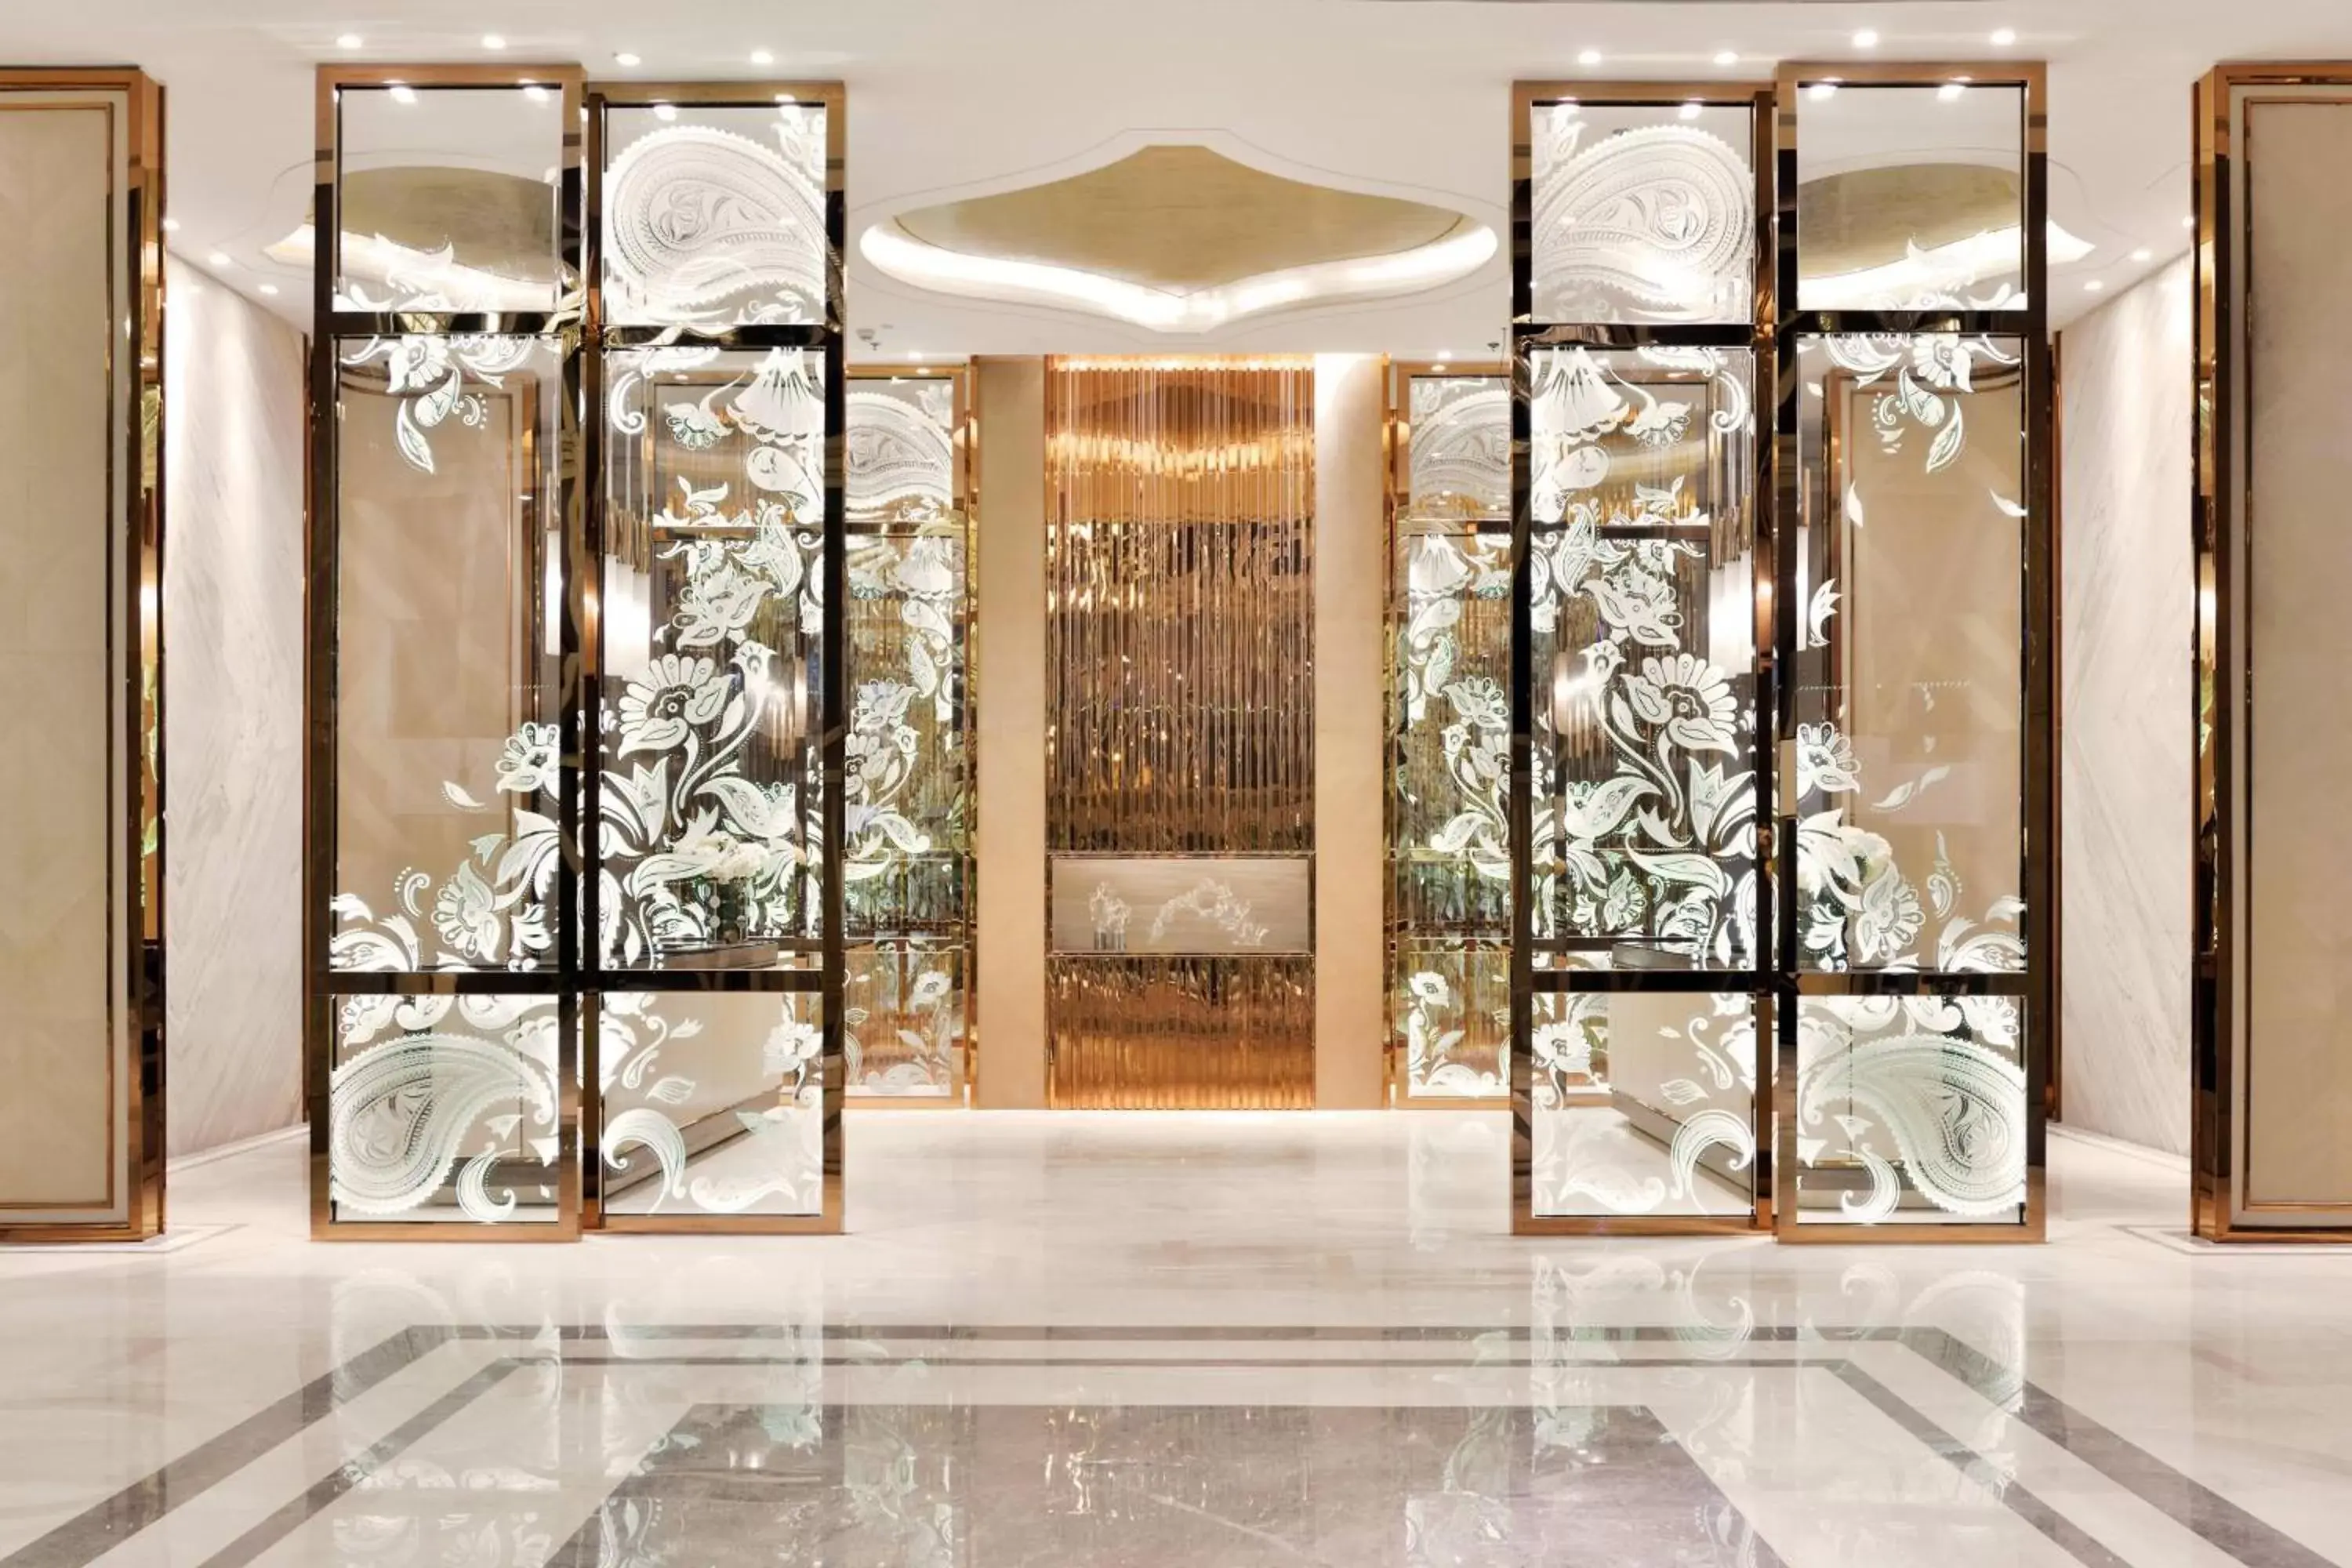 Lobby or reception in JW Marriott Hotel Kolkata